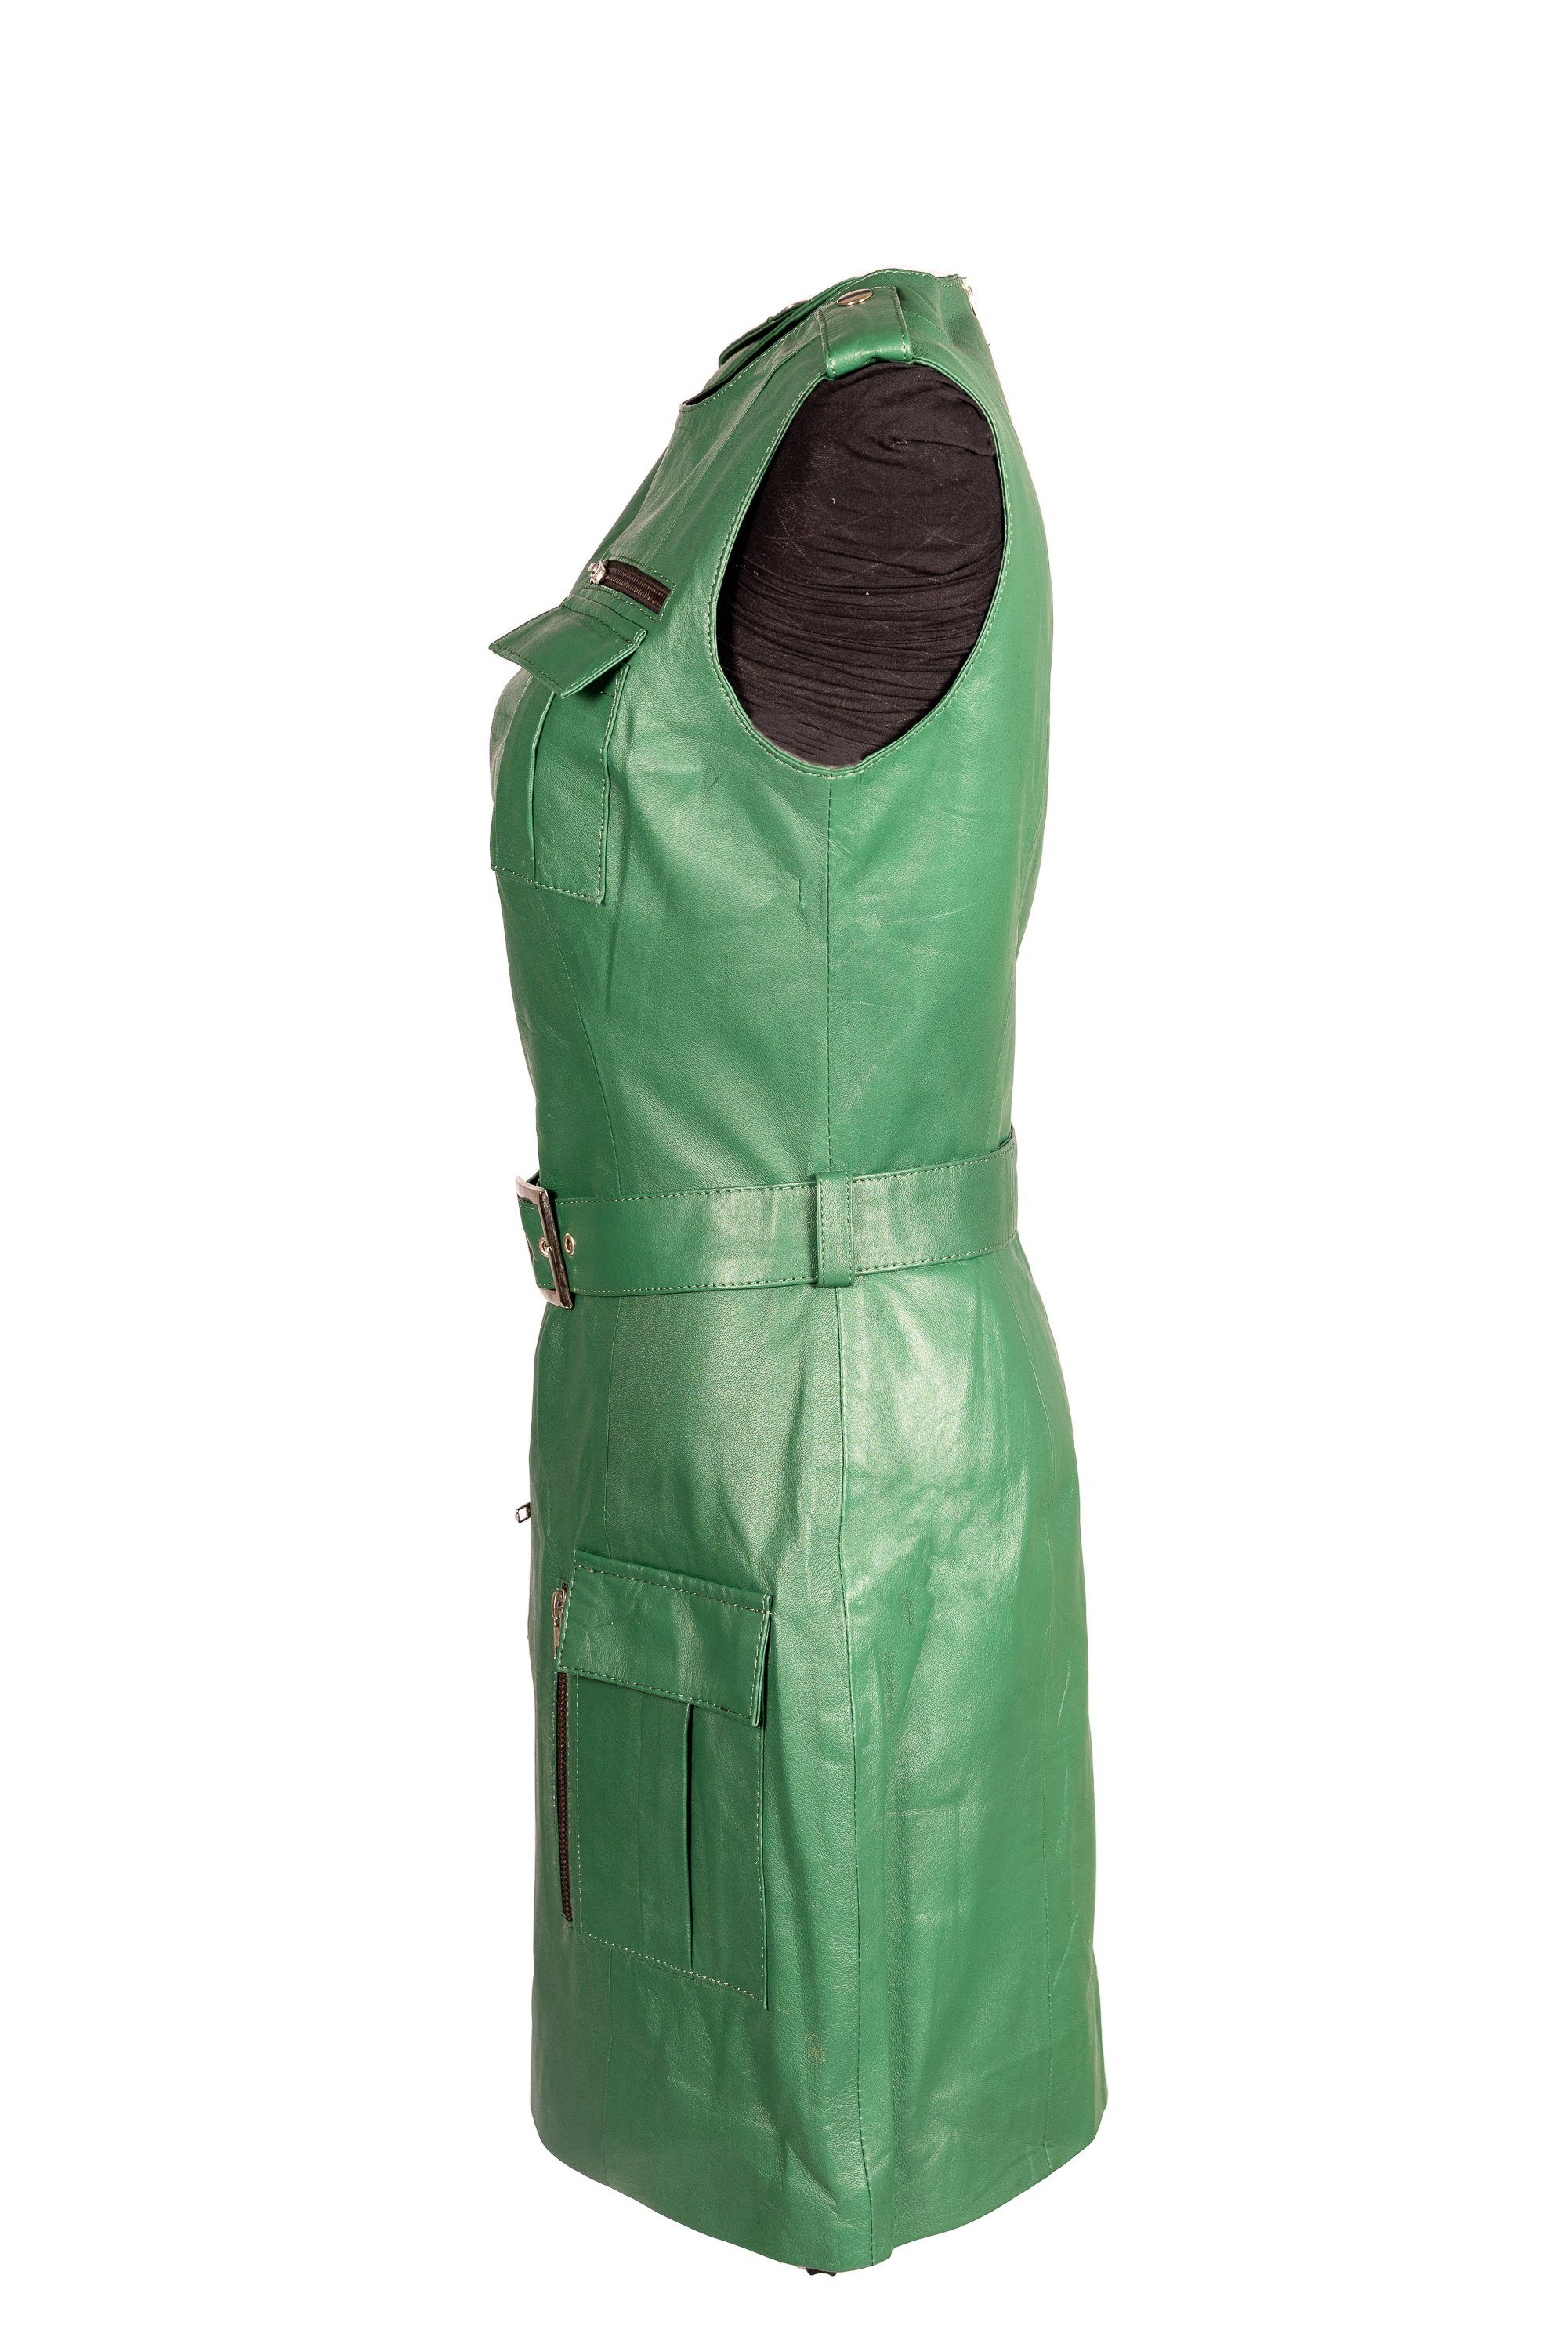 grün Be aus Lederkleid mit Lammnappa grünes Cargotaschen Lederkleid Beverly Hills Noble Sportliches